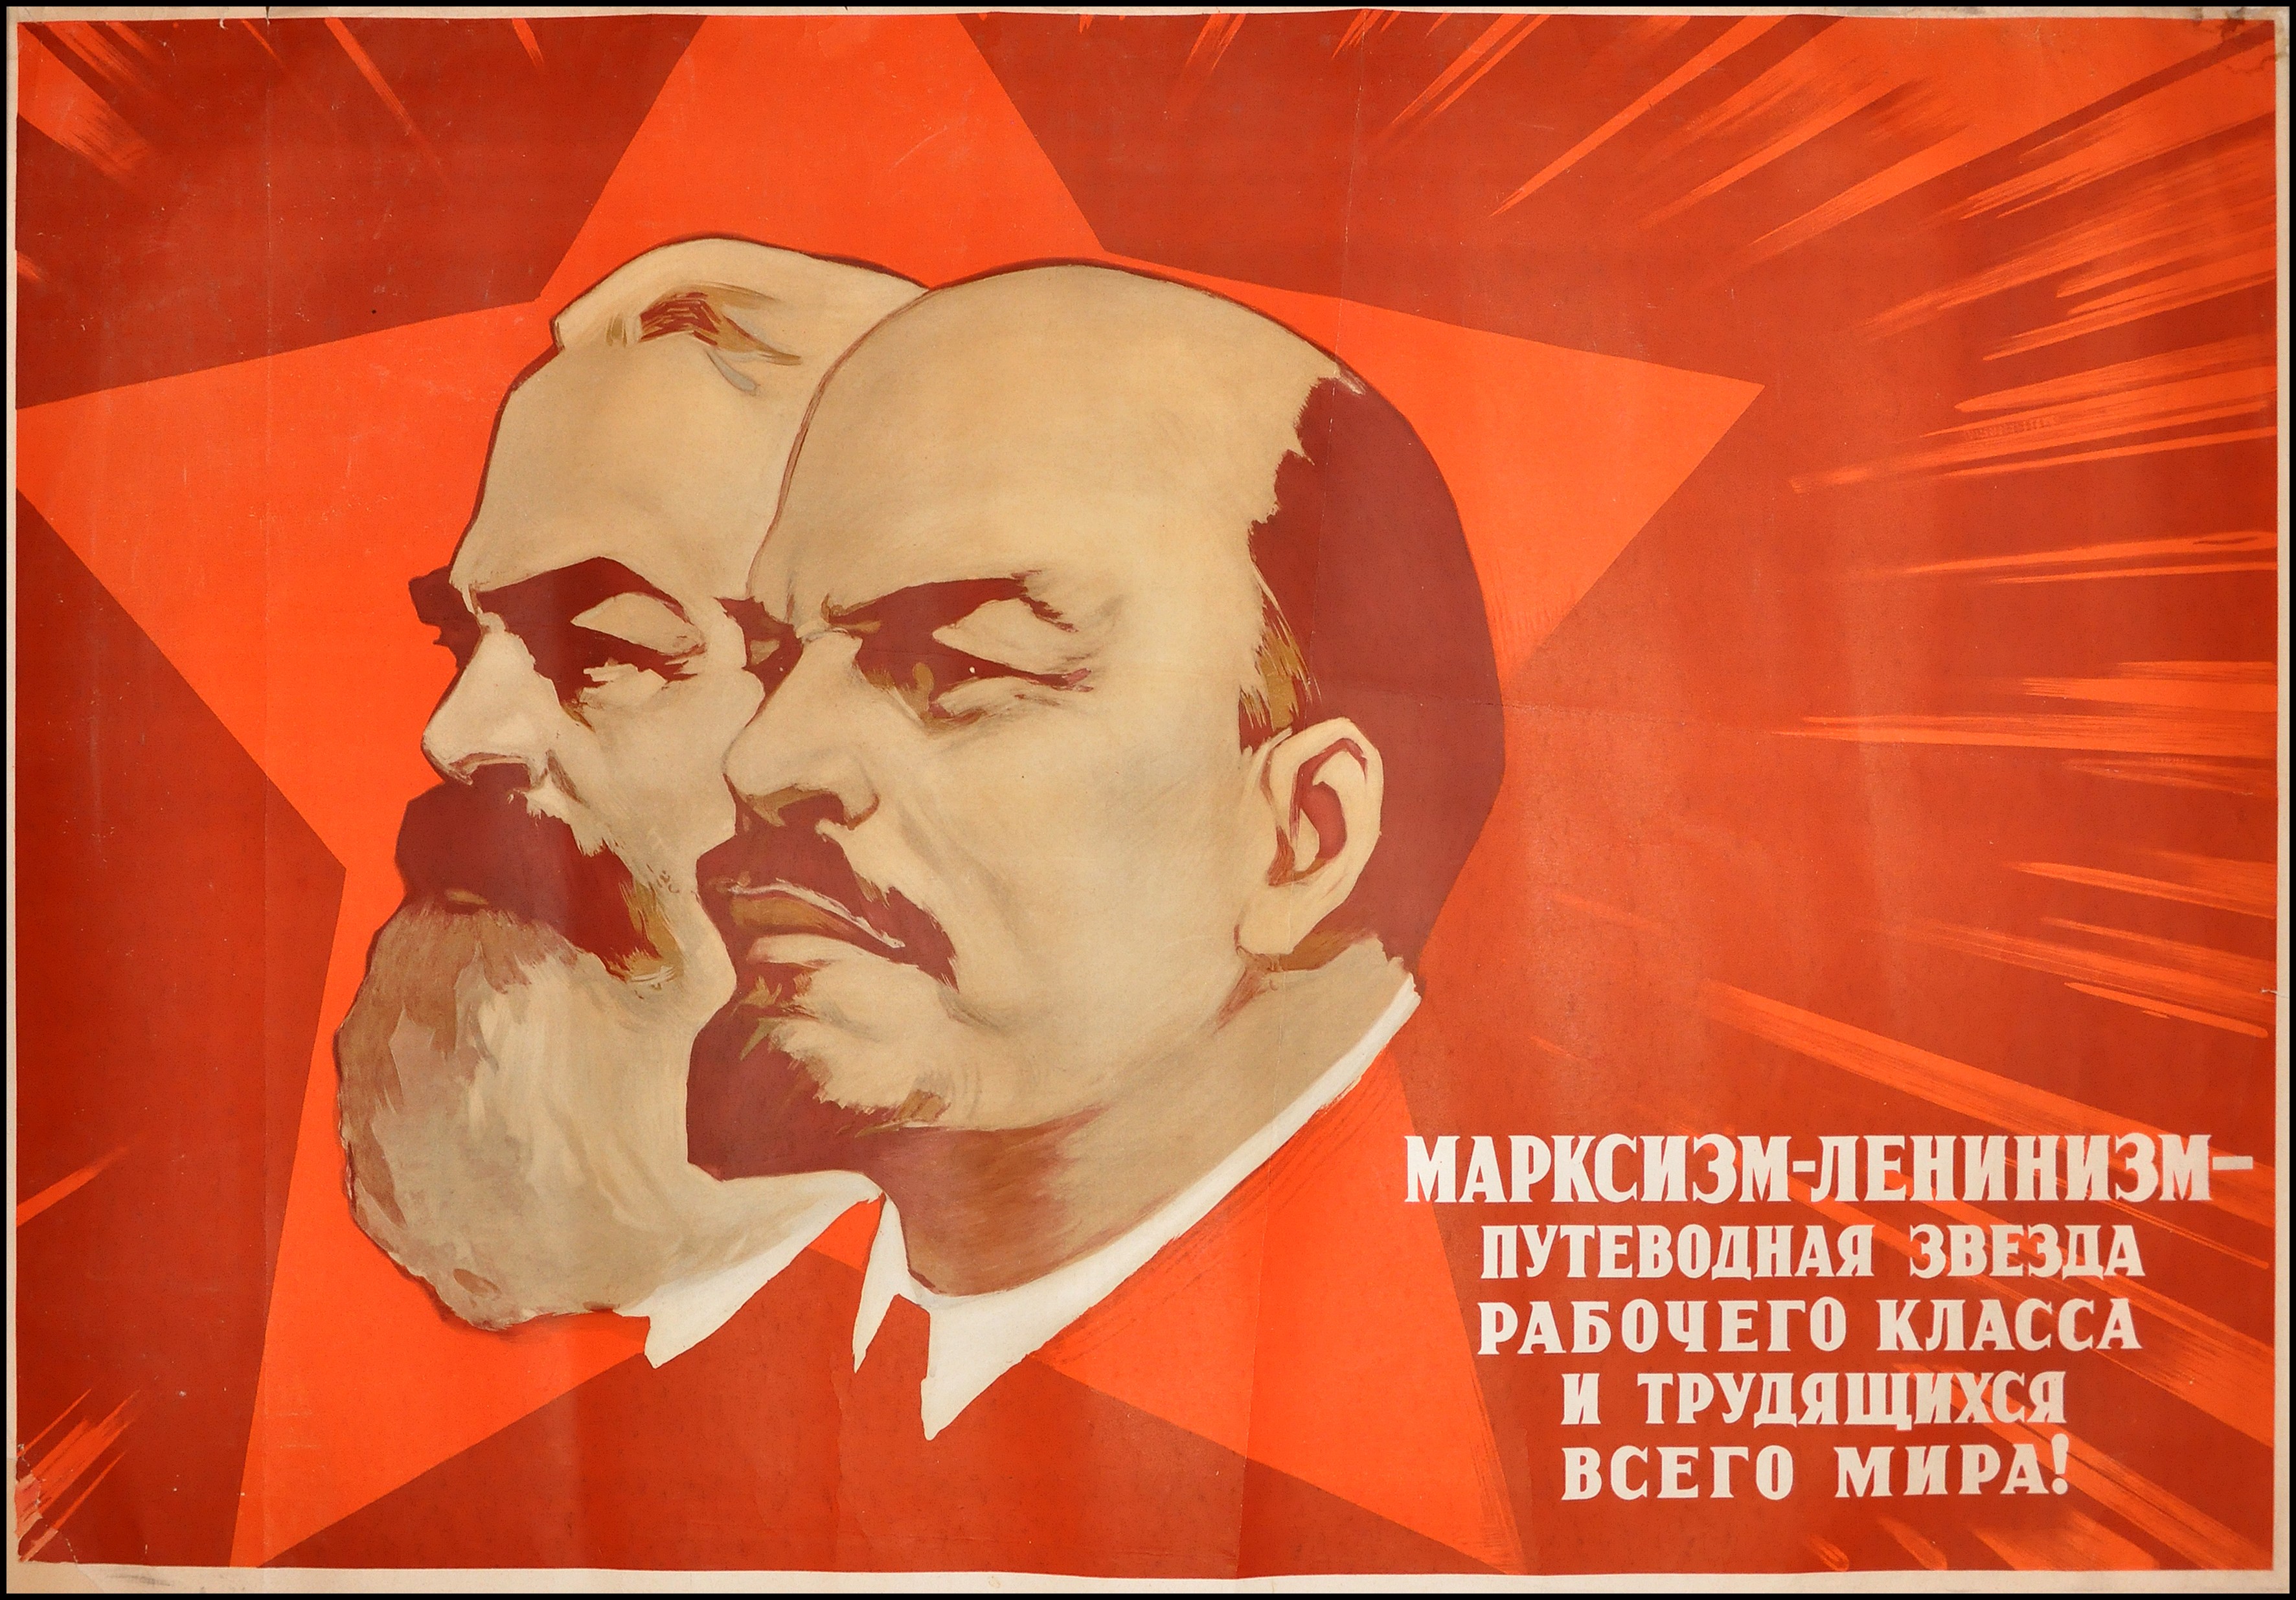 Советские плакаты Маркс Энгельс Ленин. Советская идеология Энгельс Маркс Ленин. Марксизм-ленинизм плакаты. Ленин плакат.